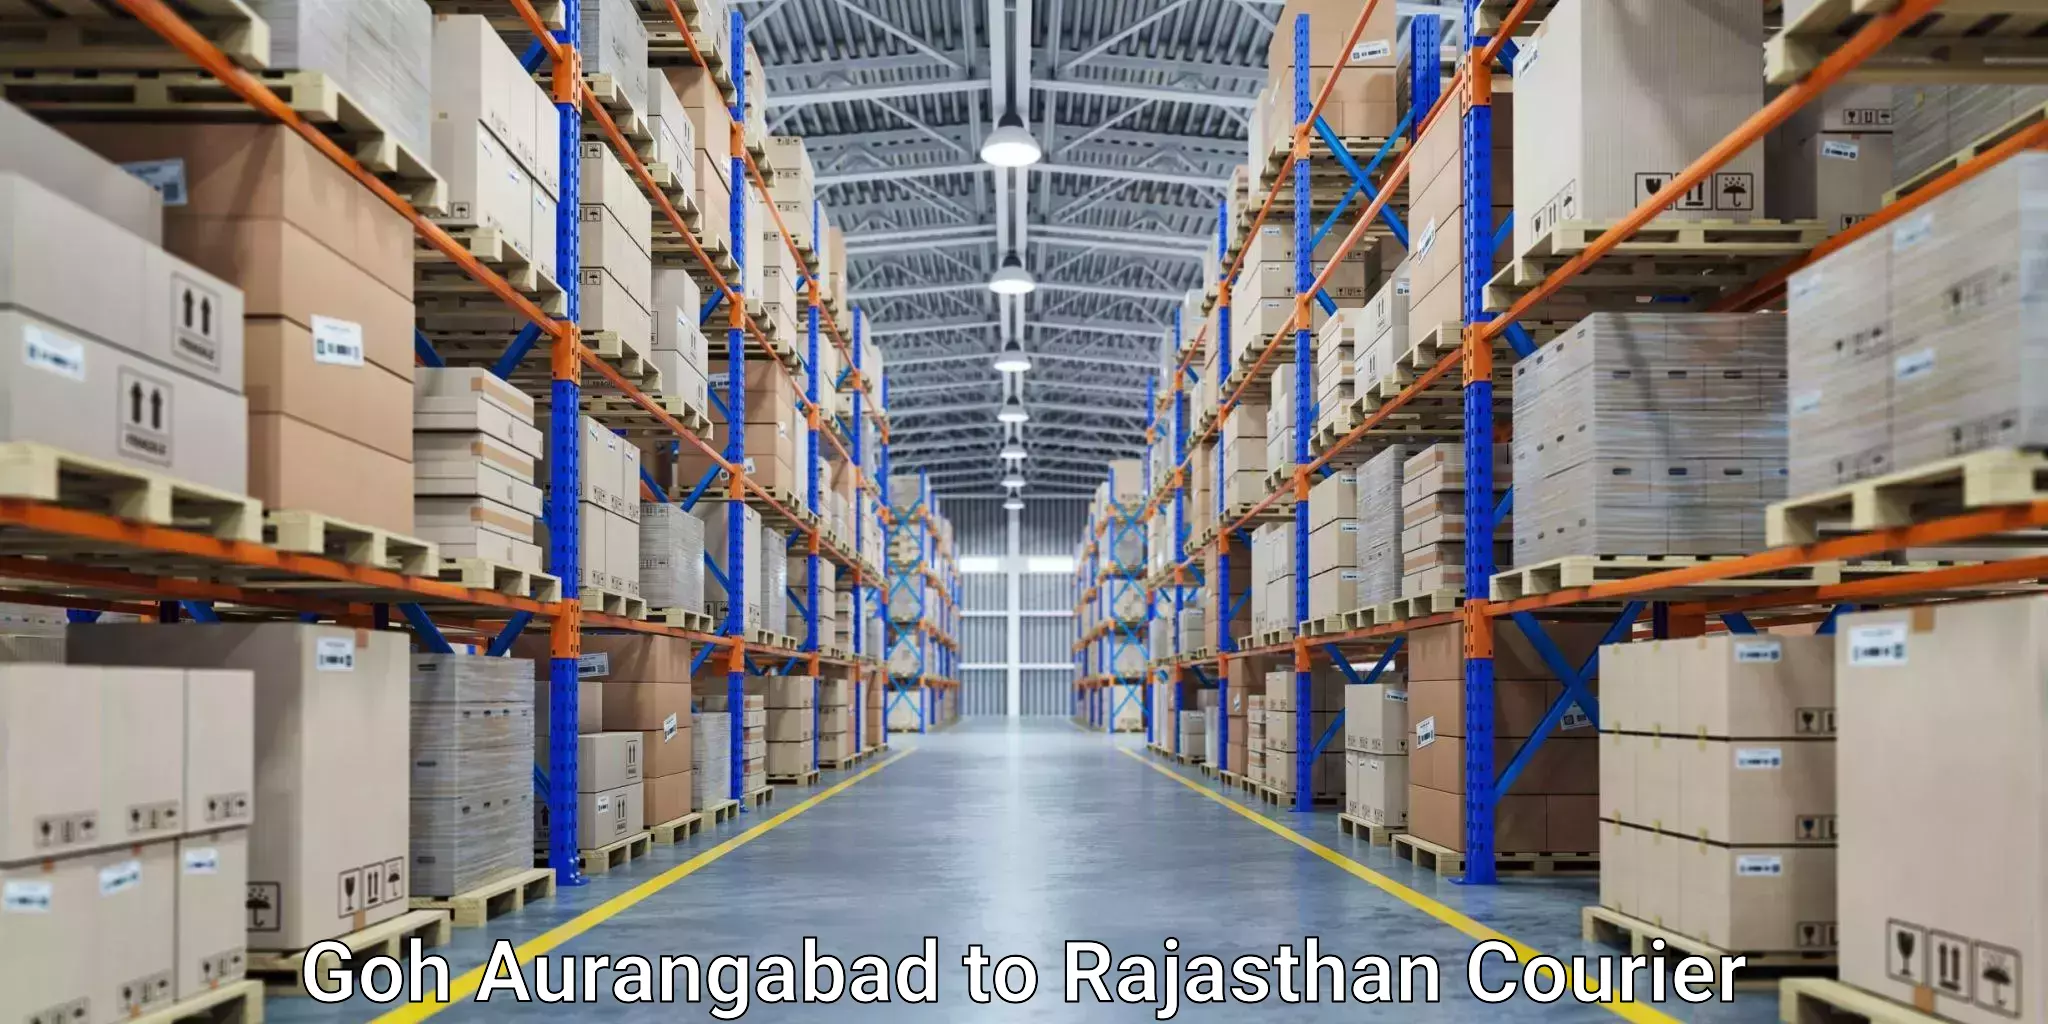 Customer-oriented courier services Goh Aurangabad to Viratnagar